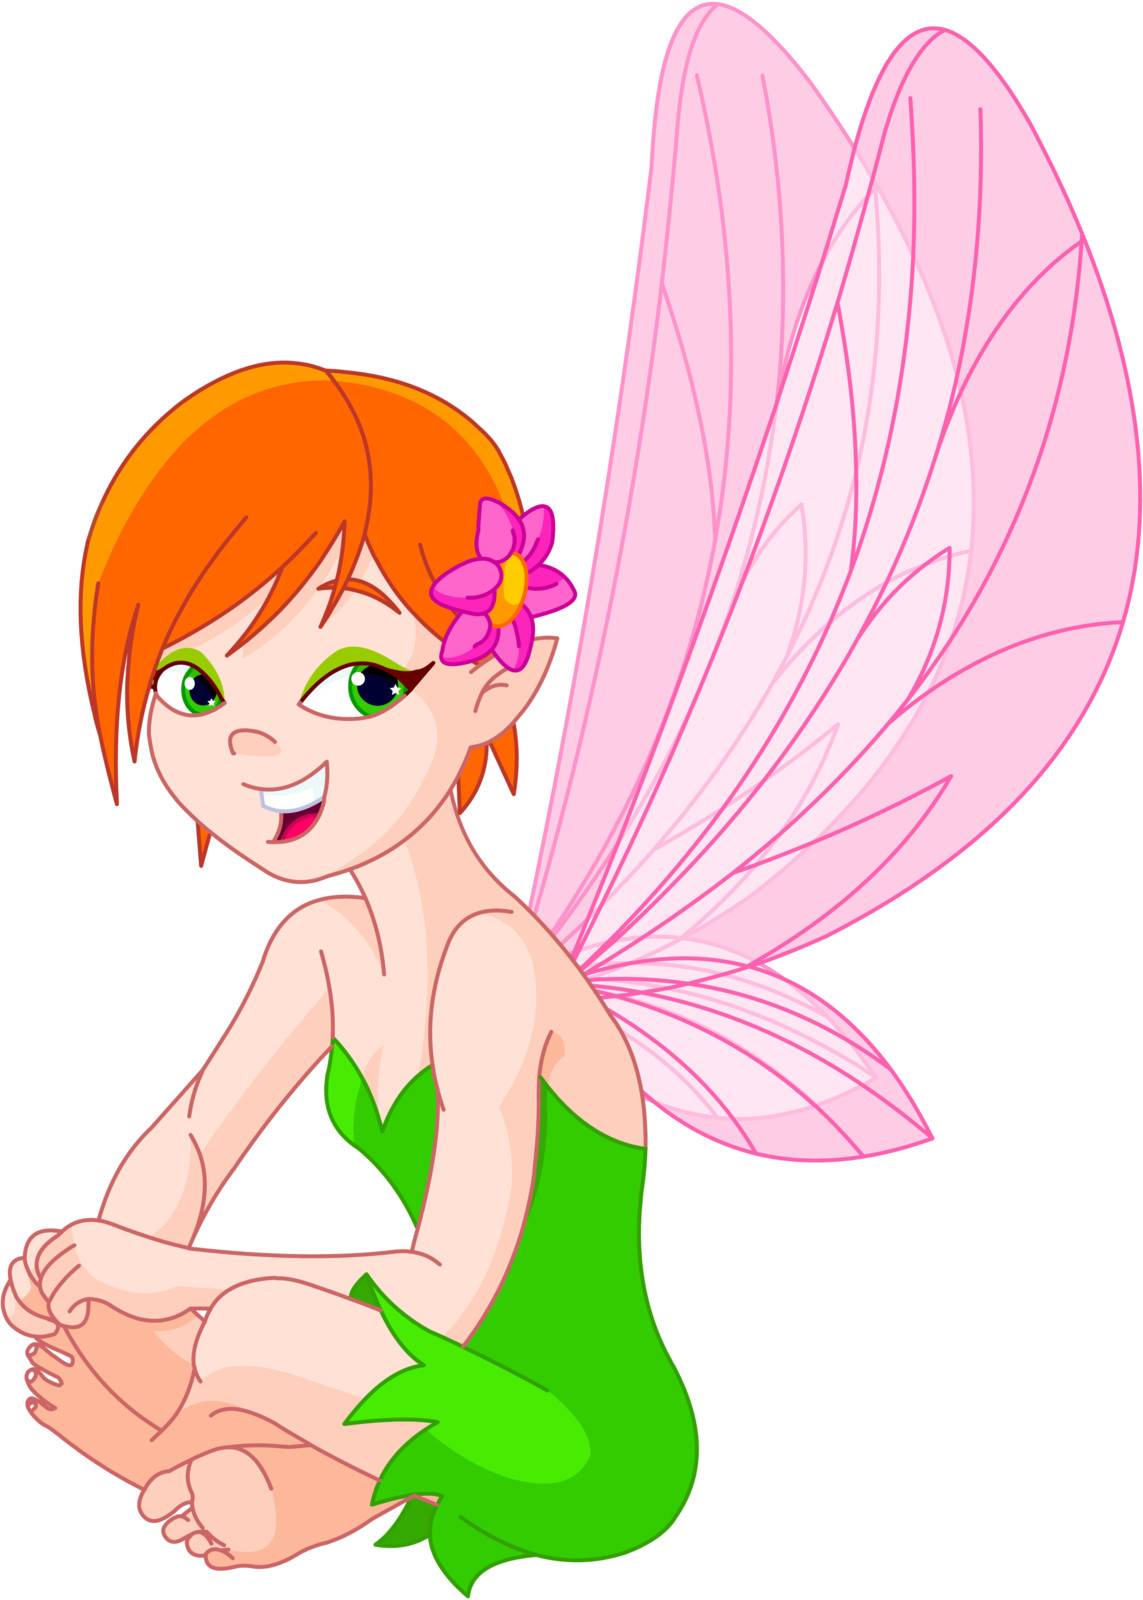 Cute laughing fairy by Dazdraperma